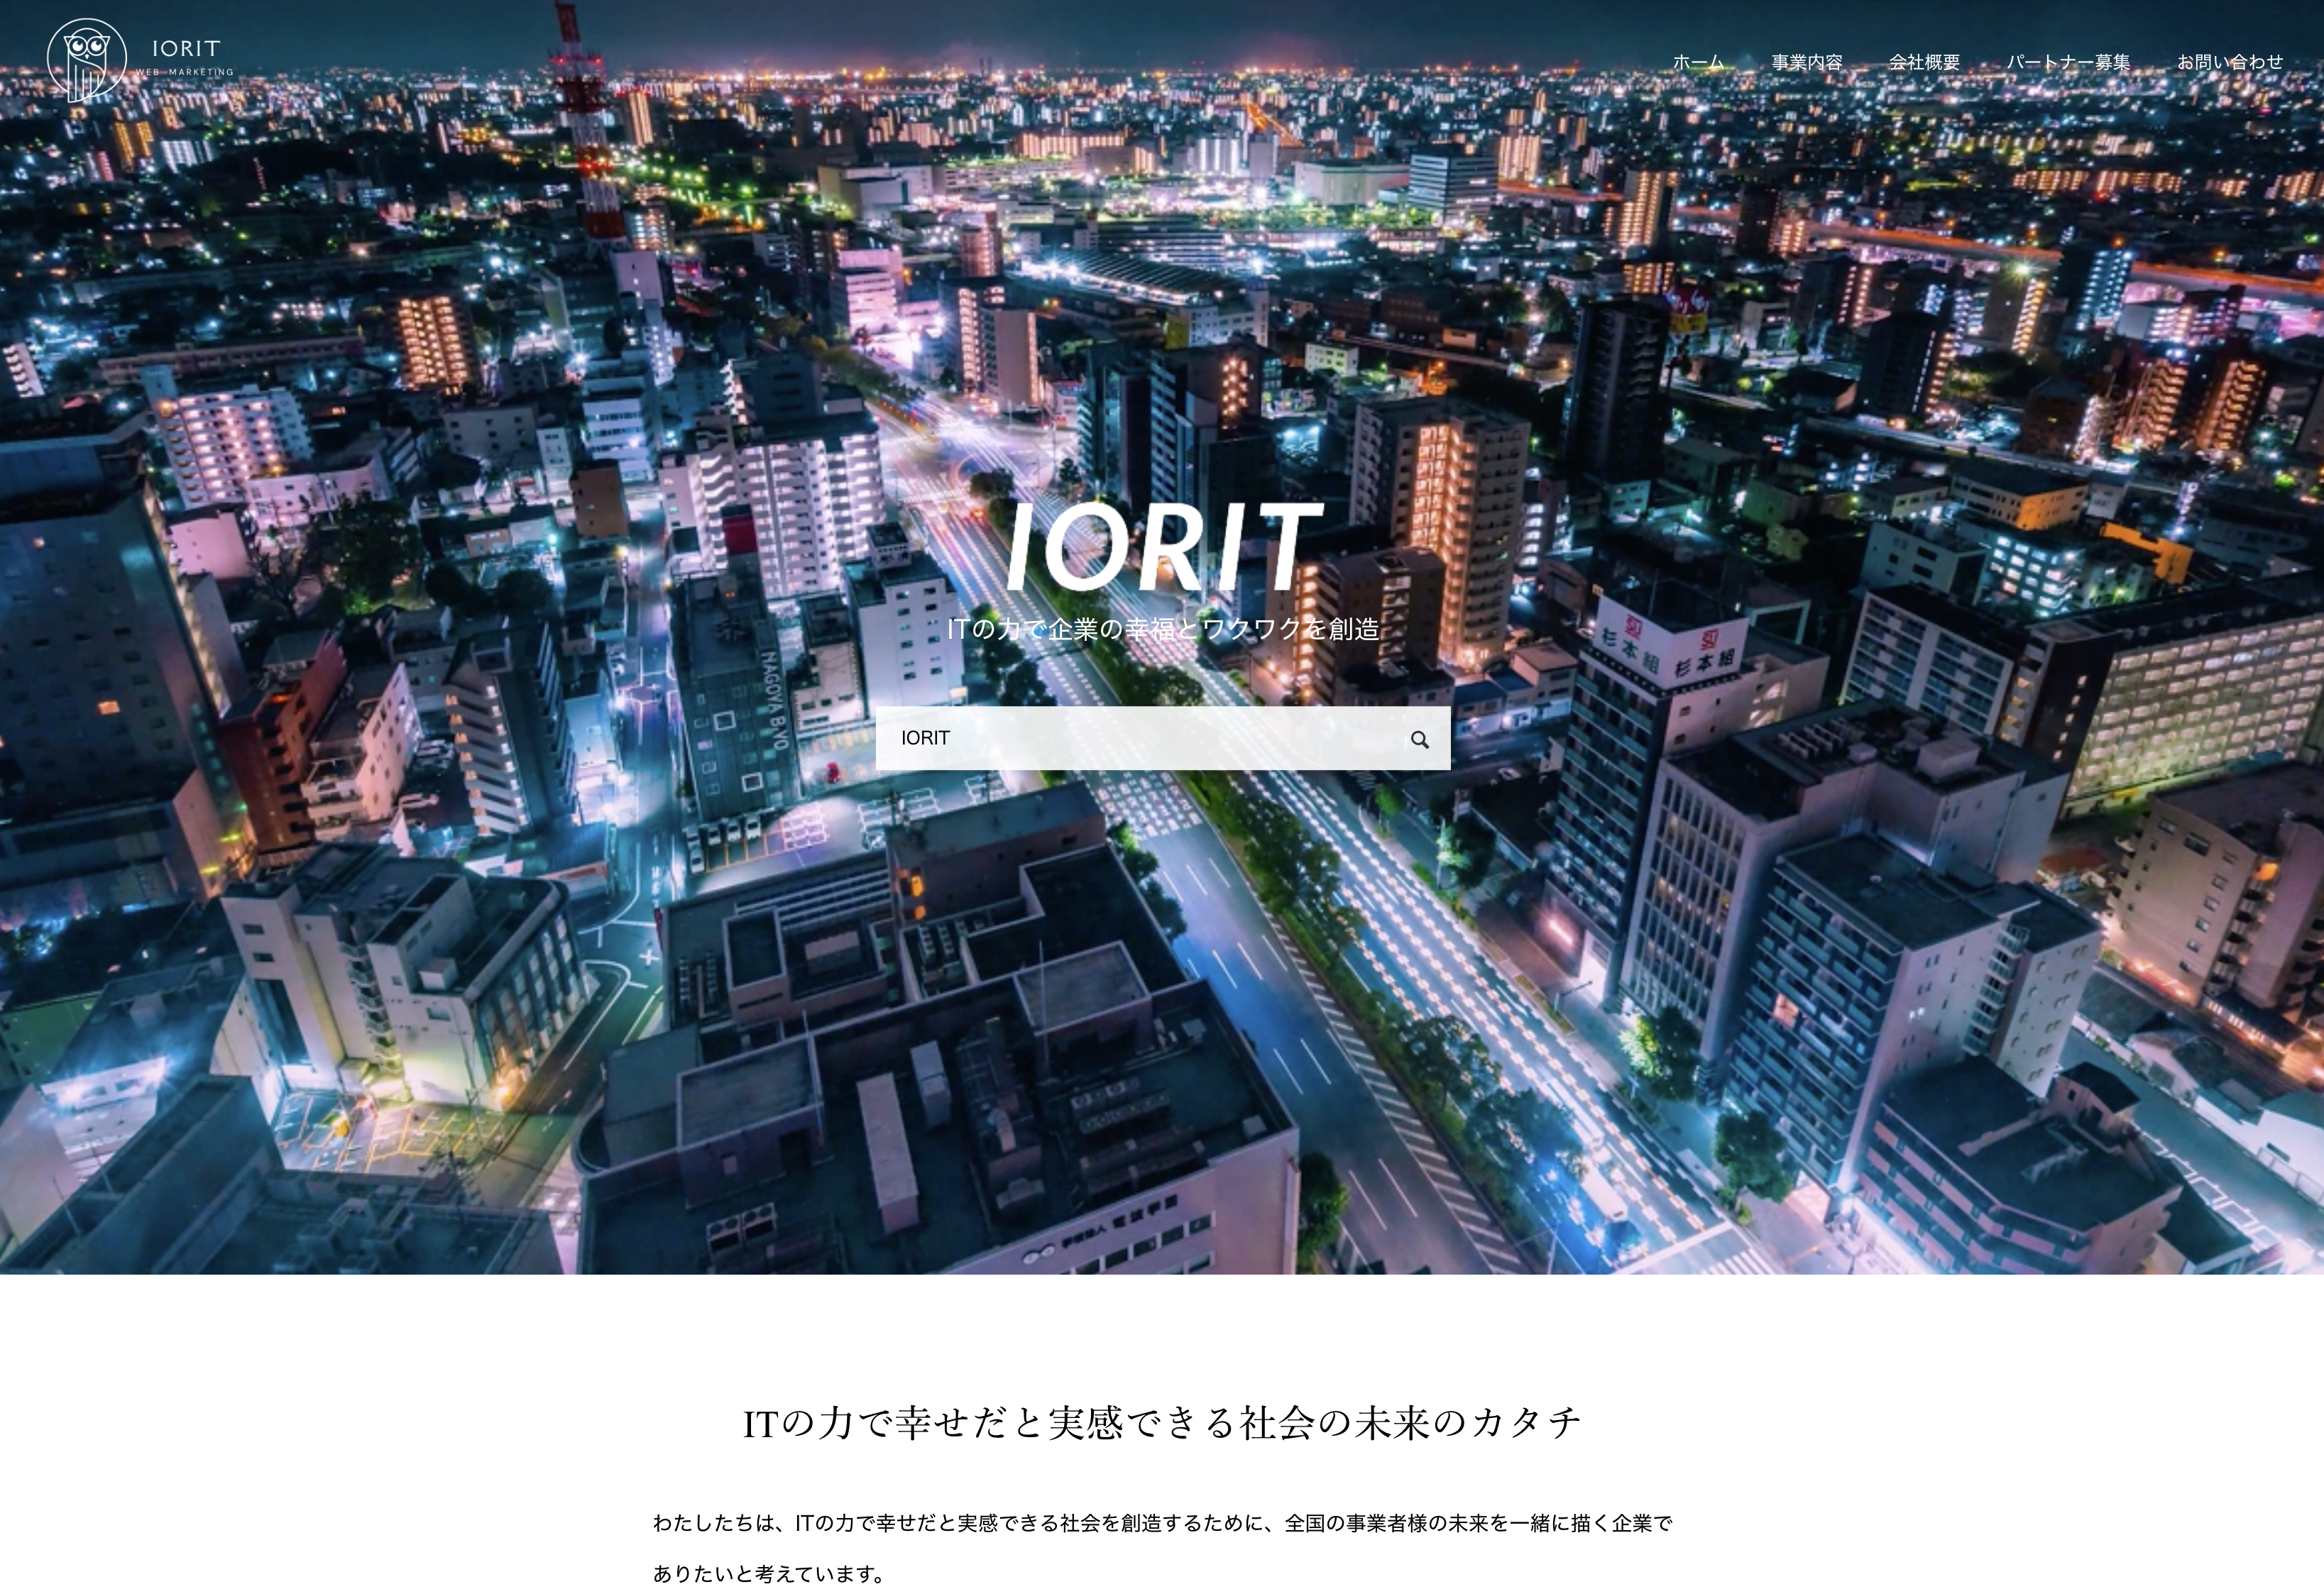 株式会社IORITの株式会社IORIT:コンサルティングサービス